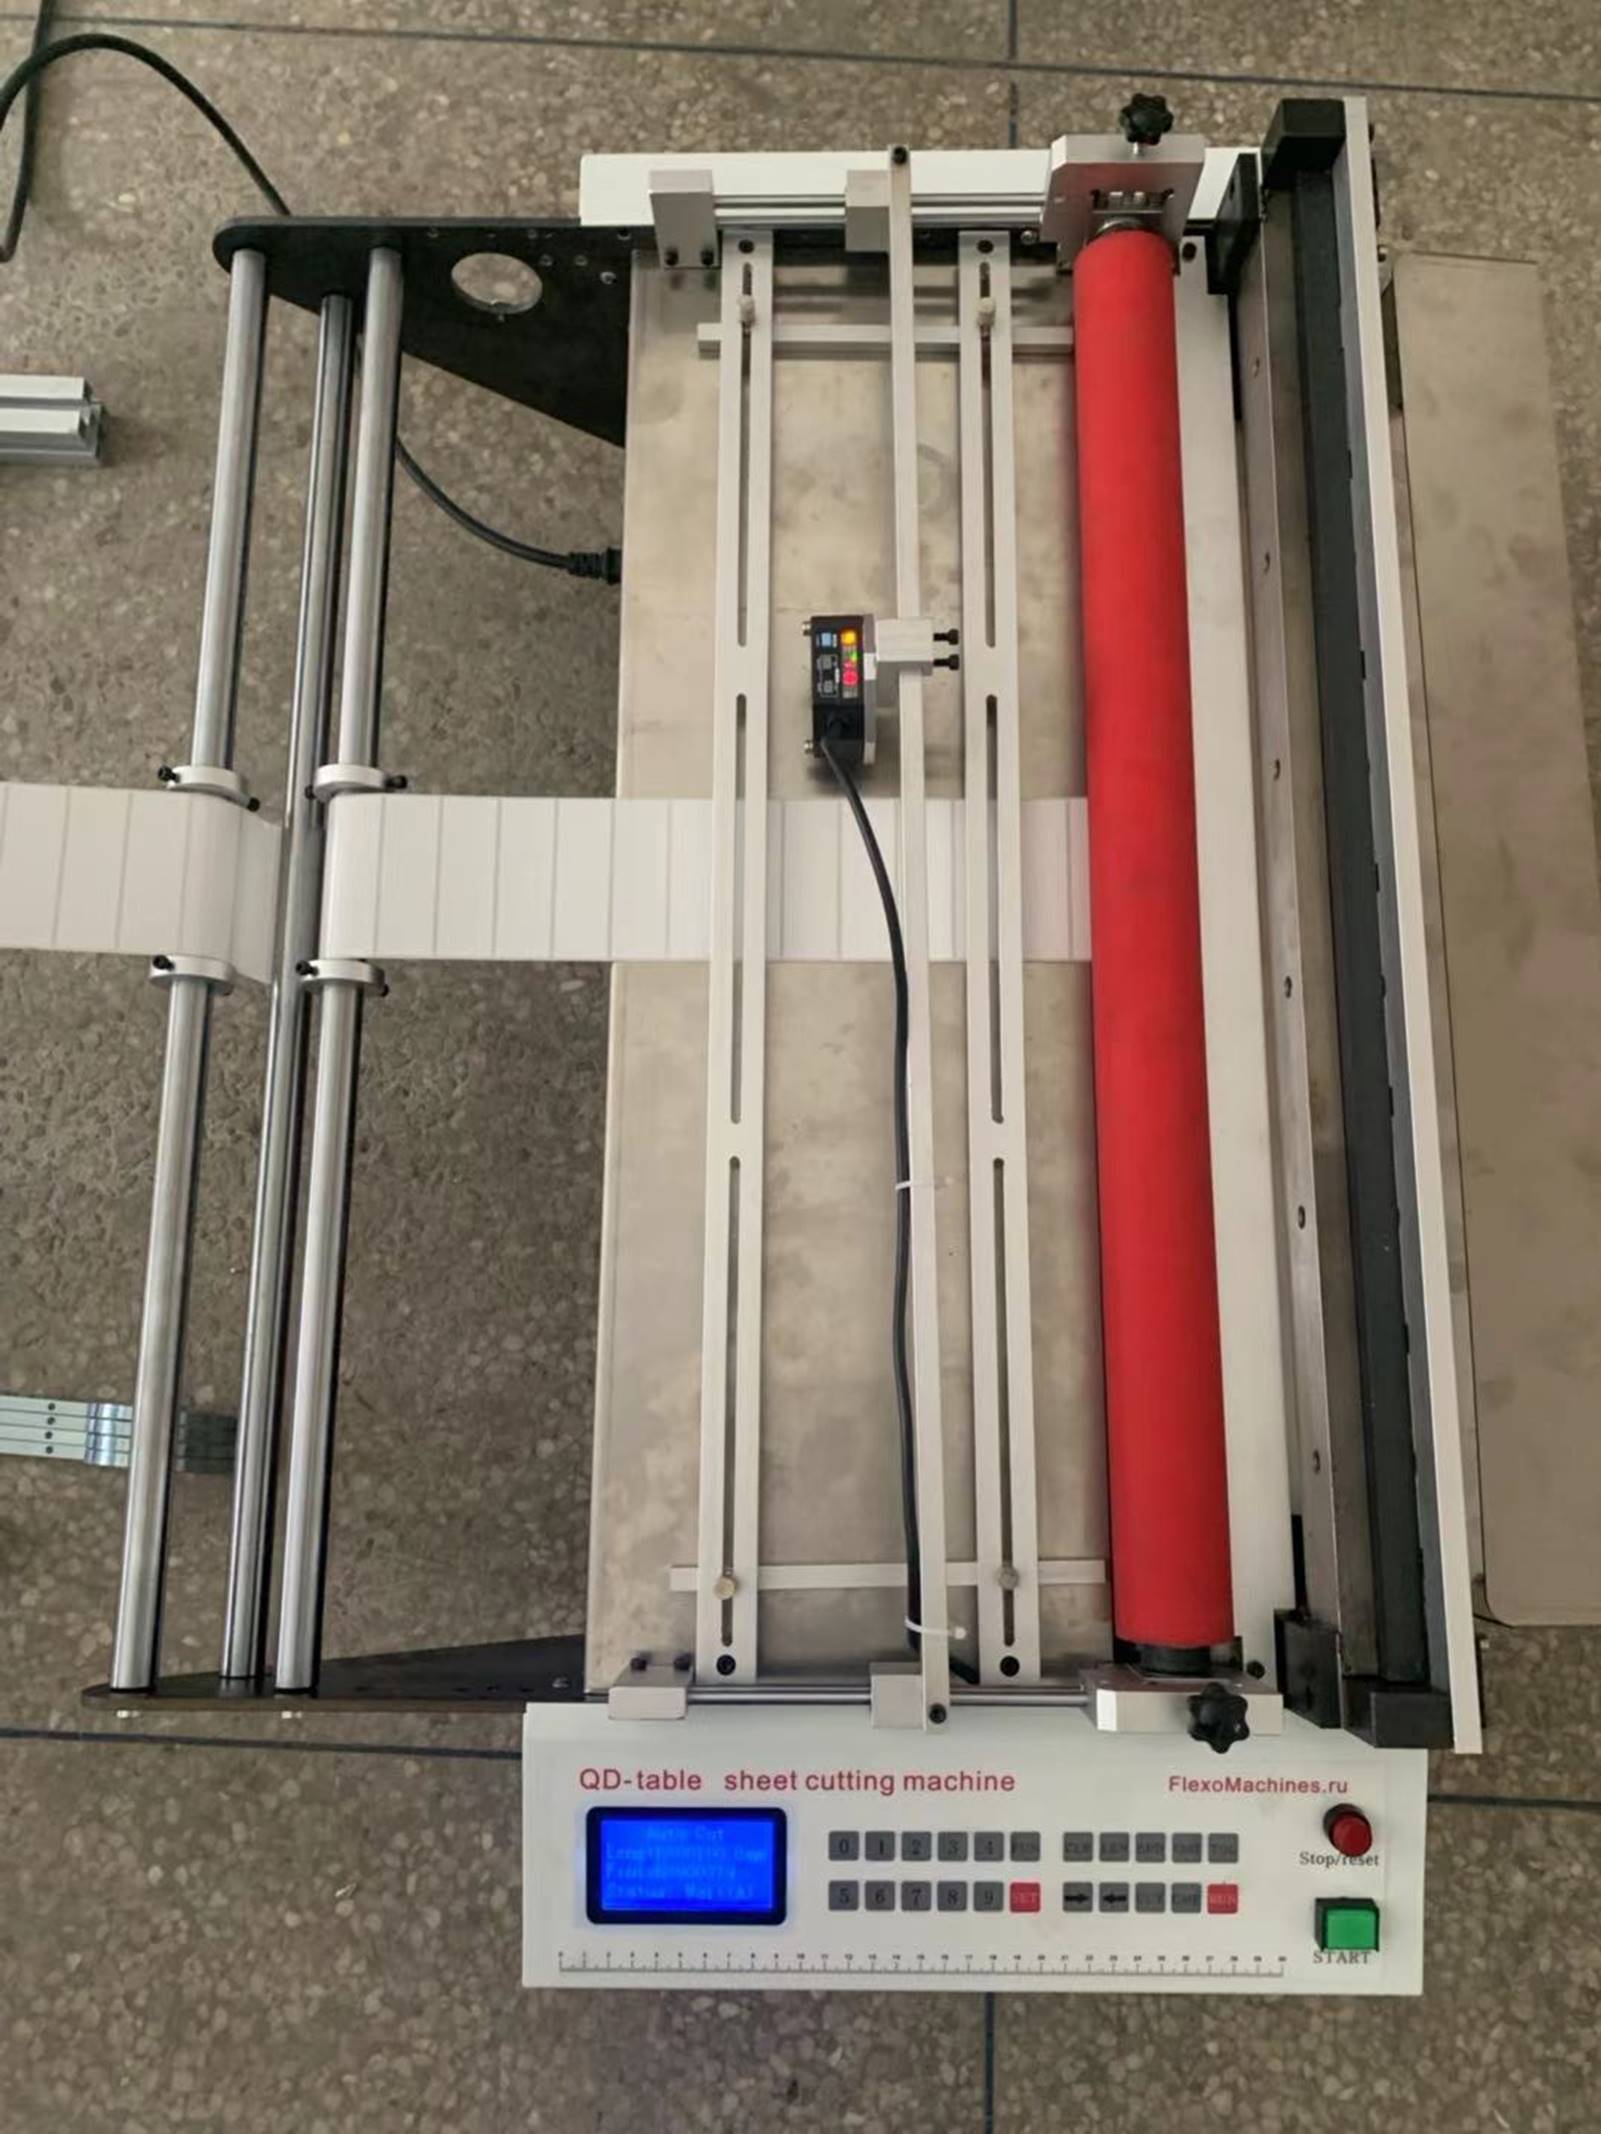 Листорезальная машина QD-600-table- подробные фотографии- листорезки - флаторезки в комплекте с системой продольной приводки по метке на материале и с отдельной стойкой размотки роля. Фотография 2.